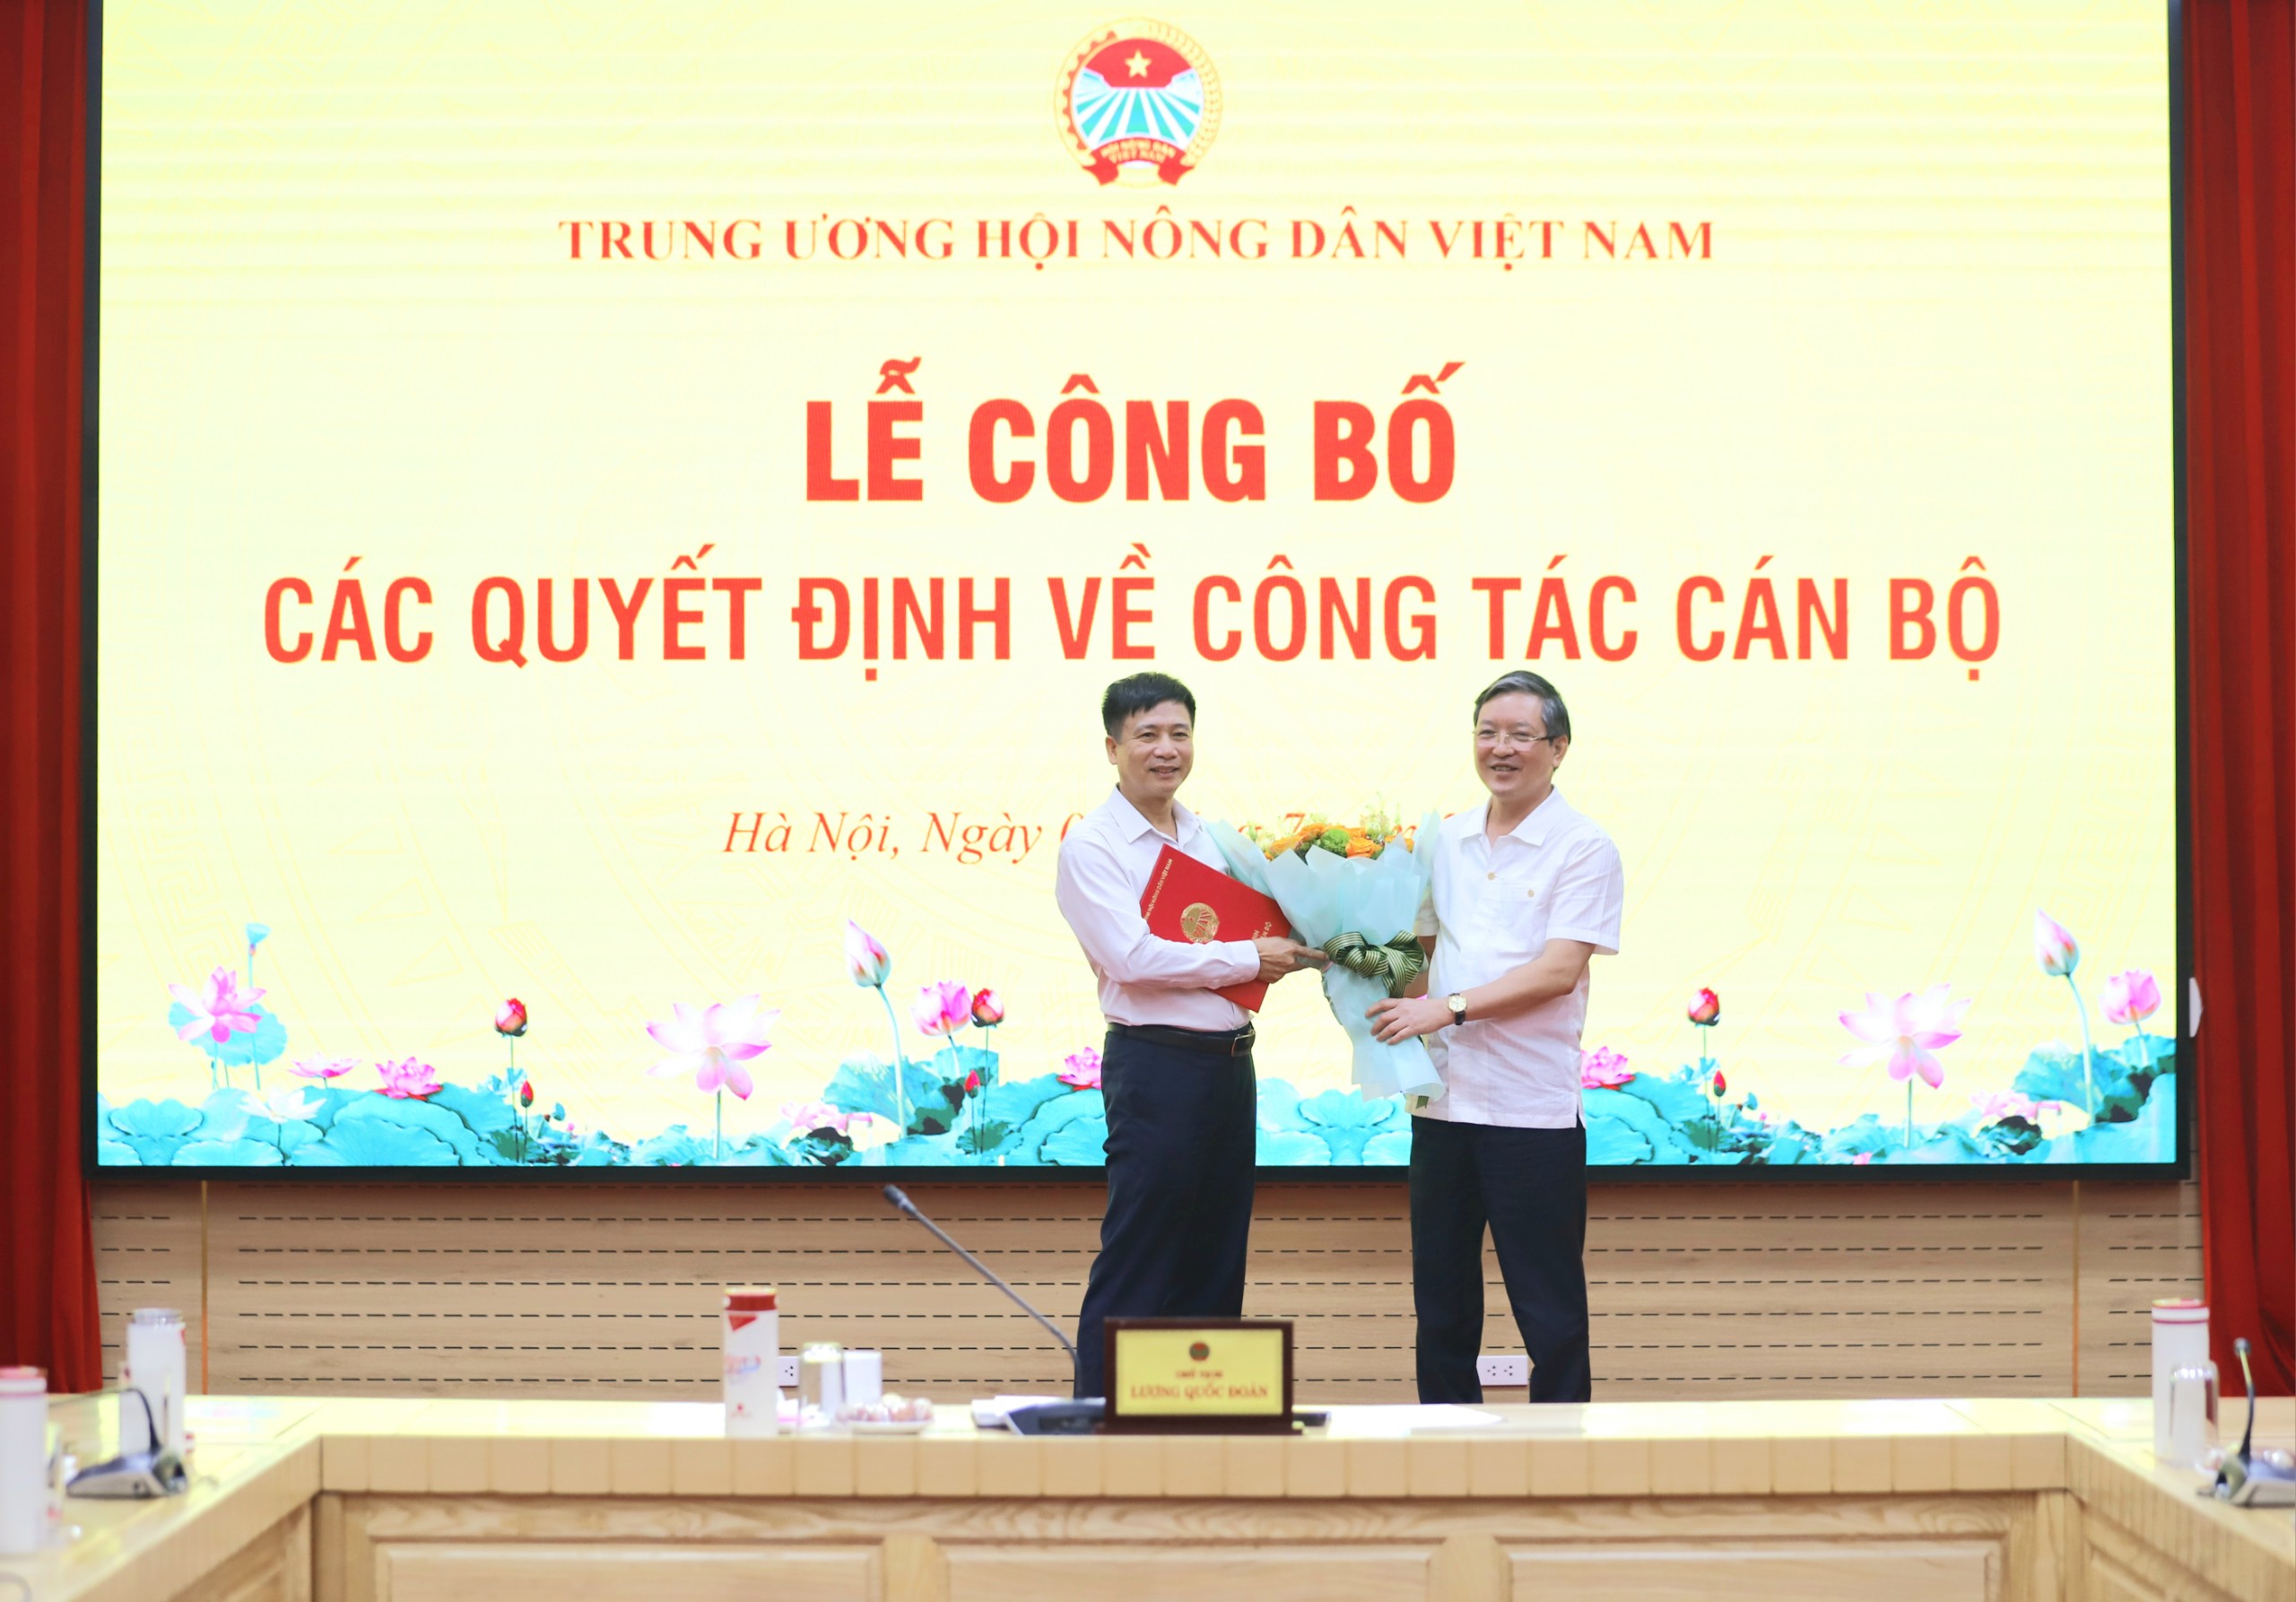 Đồng chí Nguyễn Văn Phan được bổ nhiệm làm Trưởng ban Tuyên giáo Trung ương Hội Nông dân Việt Nam- Ảnh 1.